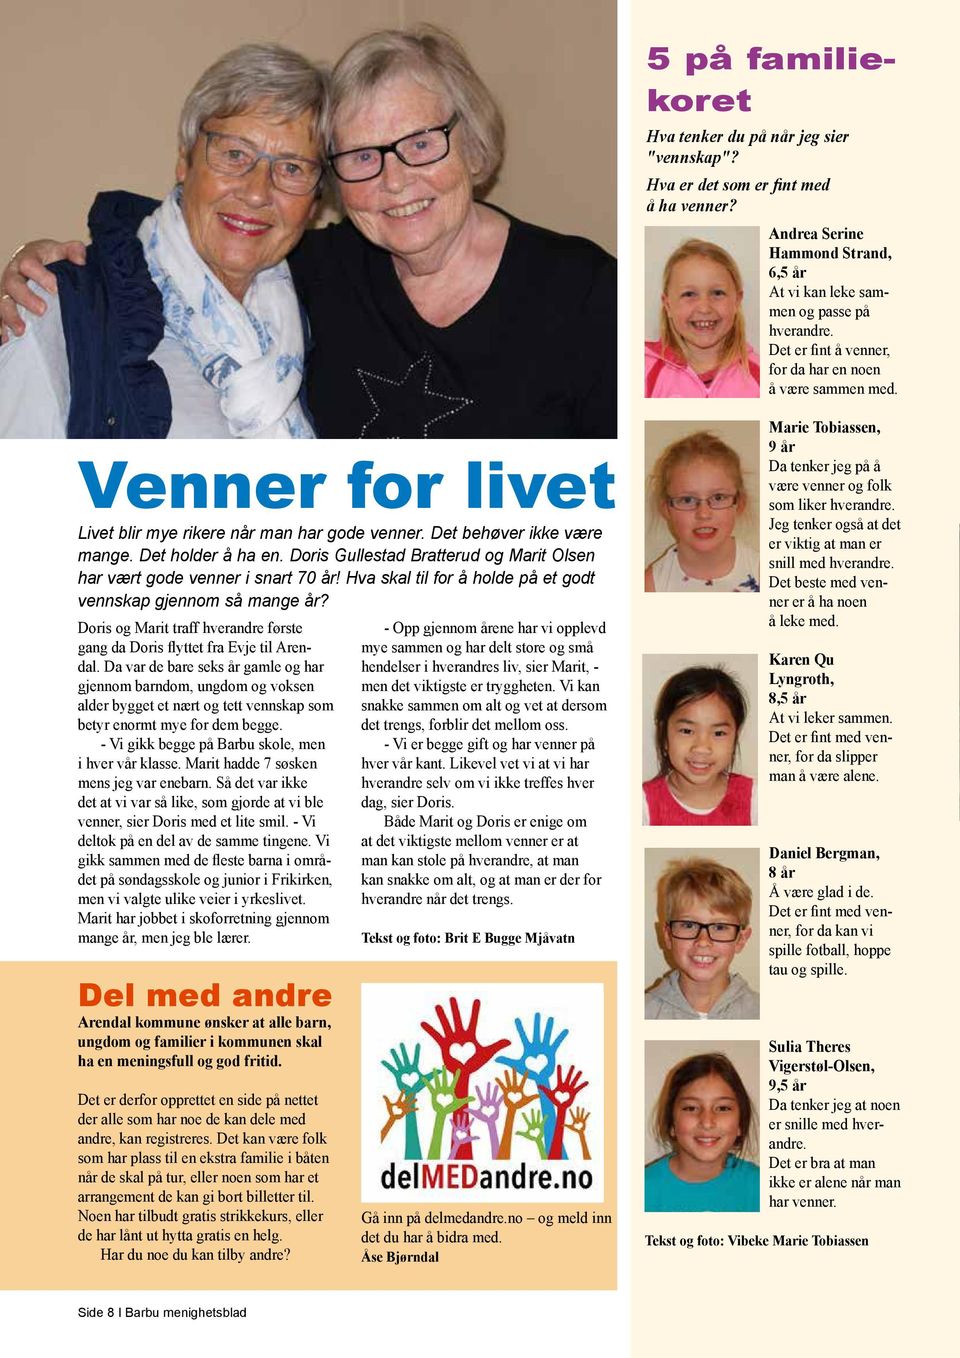 Doris Gullestad Bratterud og Marit Olsen har vært gode venner i snart 70 år! Hva skal til for å holde på et godt vennskap gjennom så mange år?